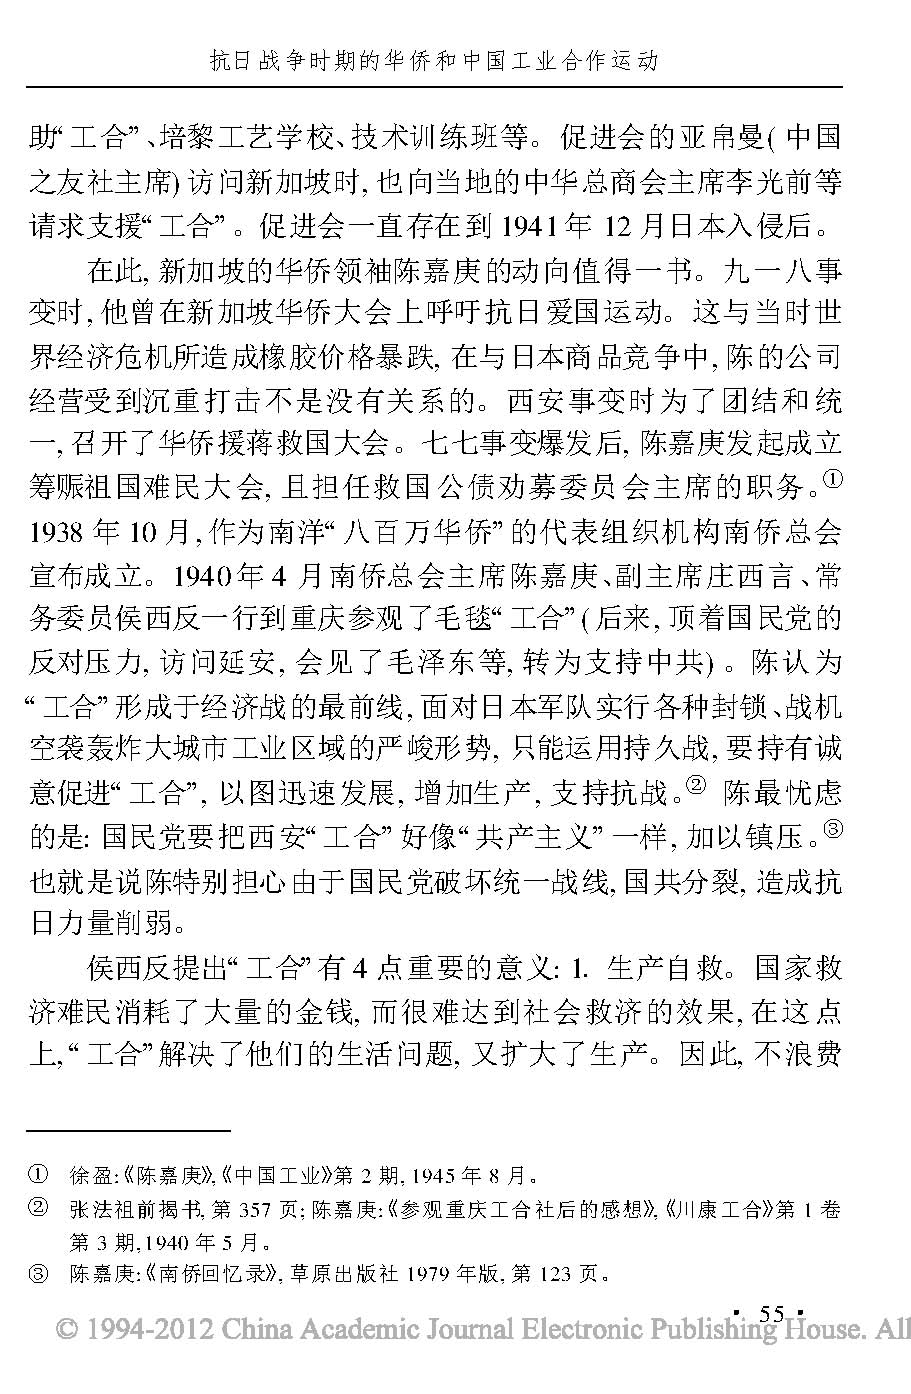 抗日战争时期的华侨和中国工业合作运动_页面_12.jpg